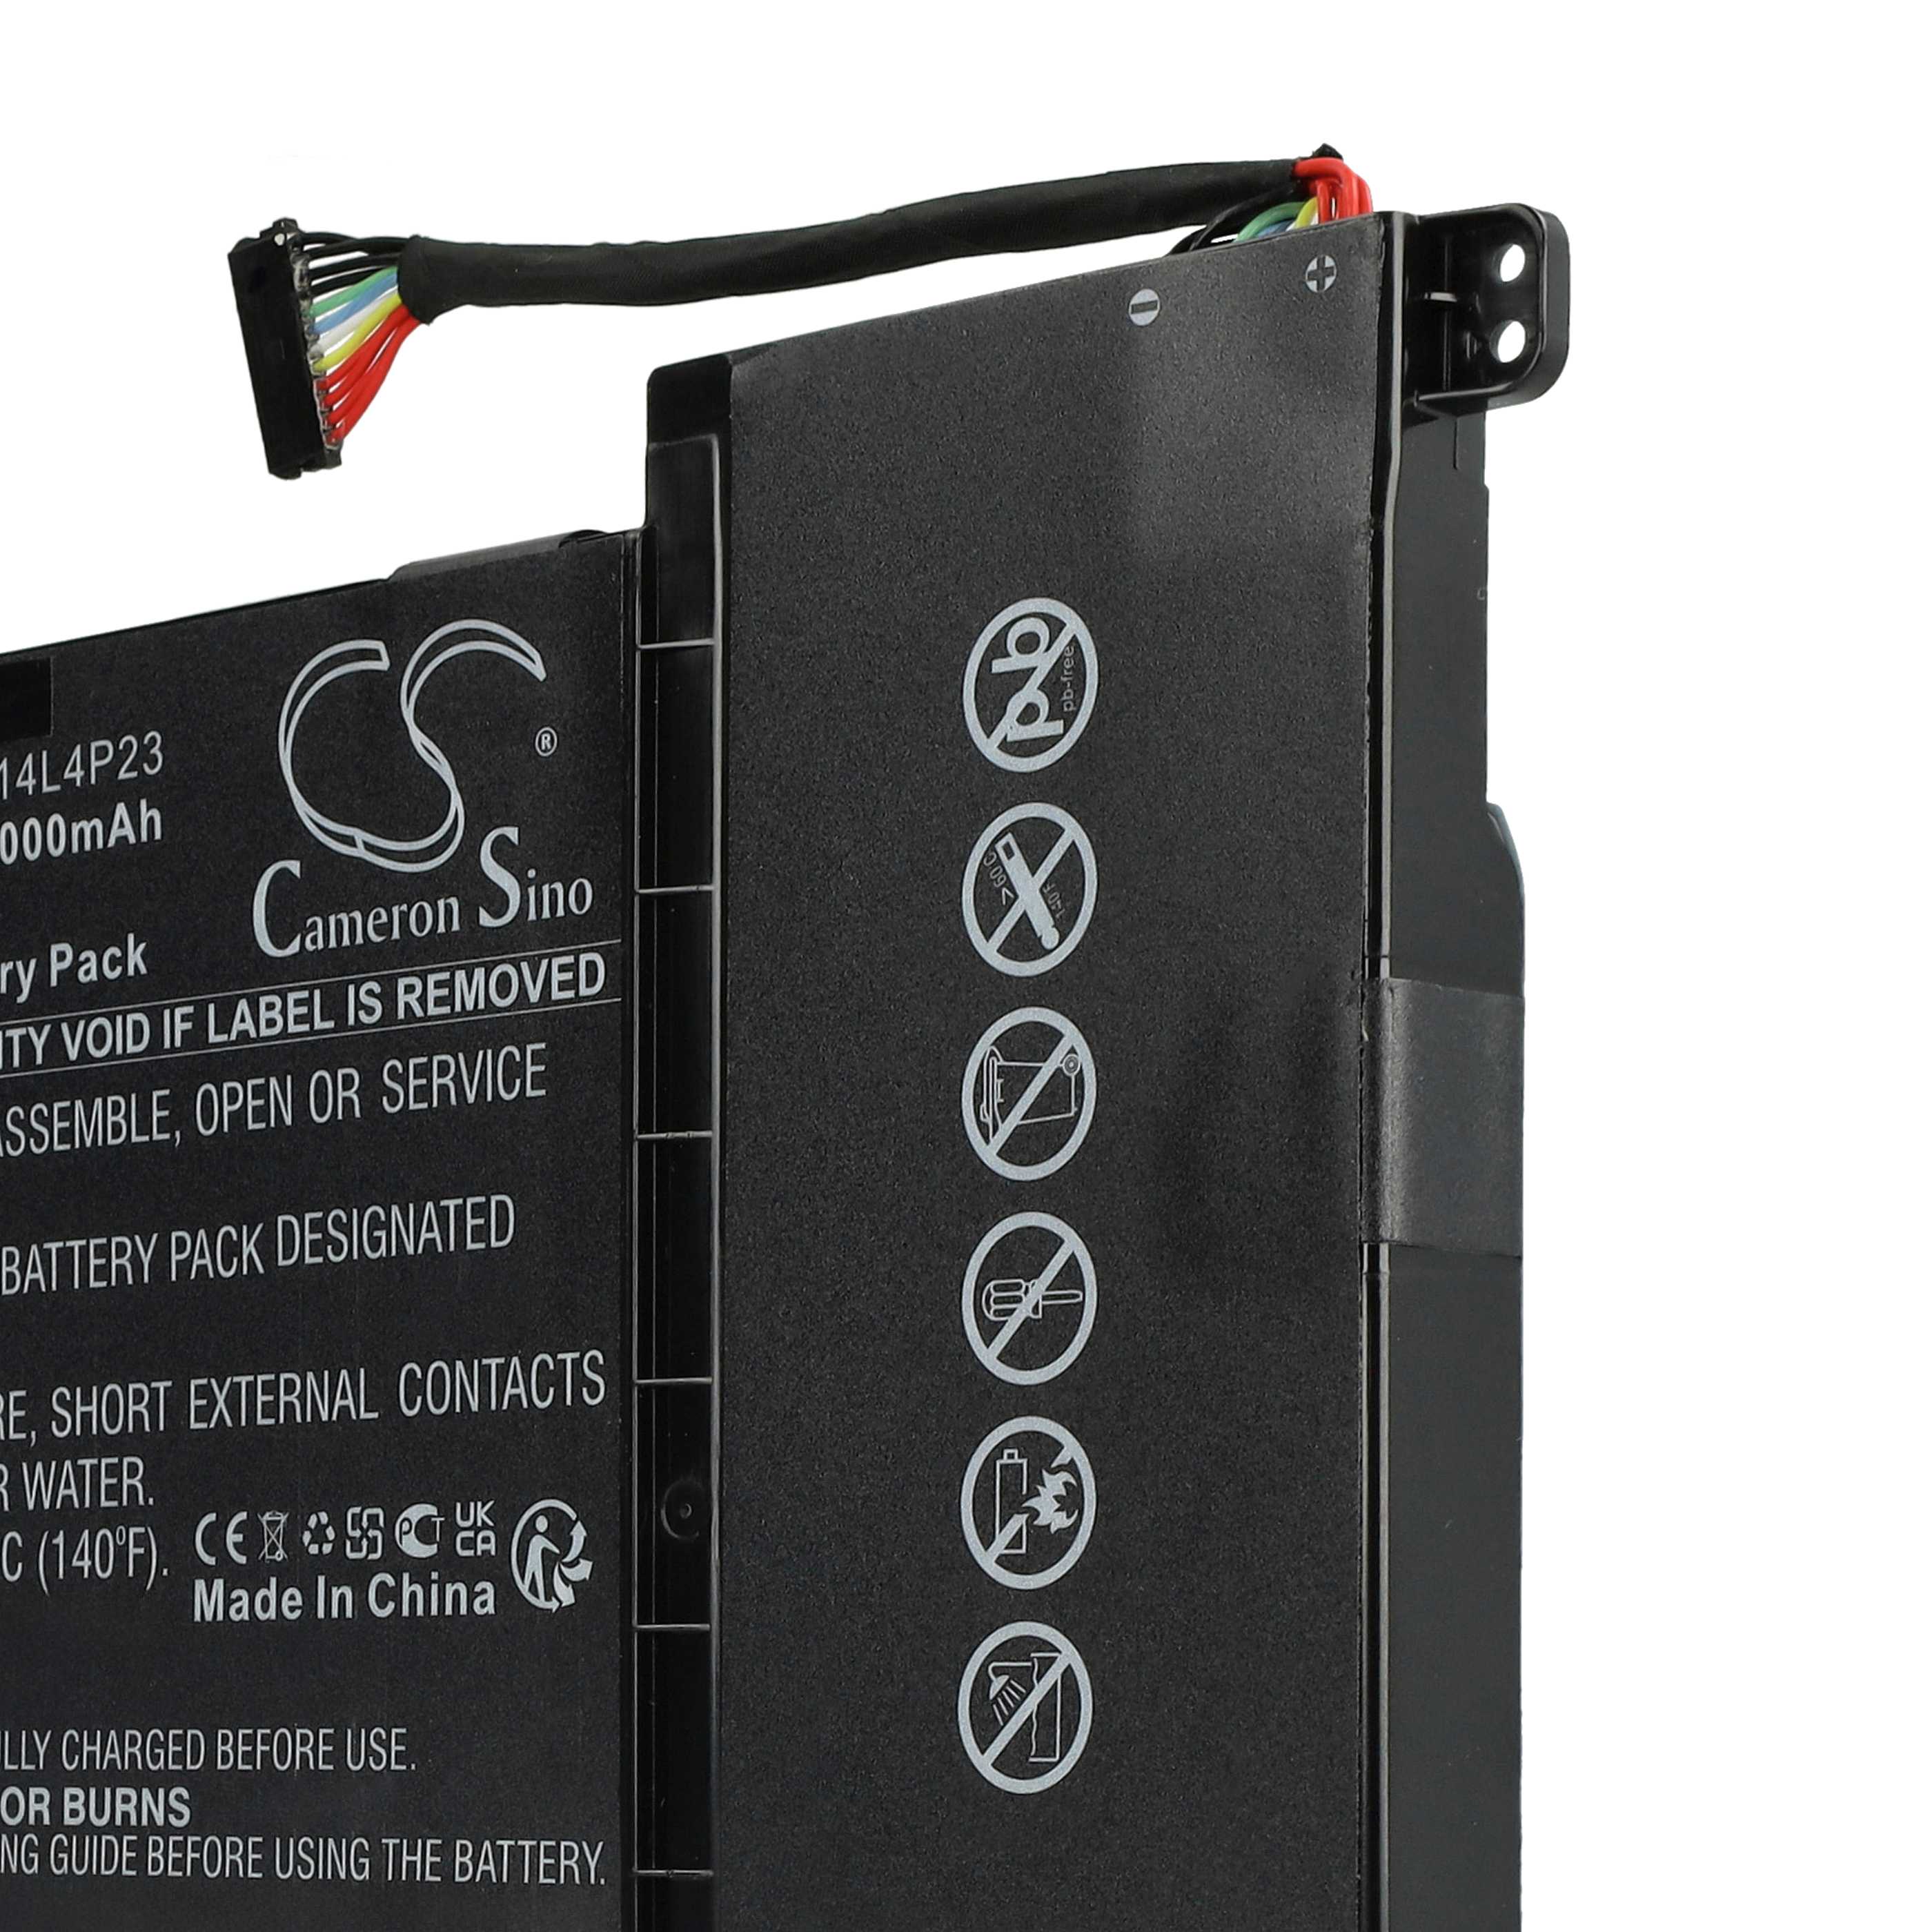 Batterie remplace Lenovo L14M4P23, L14L4P23 pour ordinateur portable - 4000mAh 14,8V Li-polymère, noir